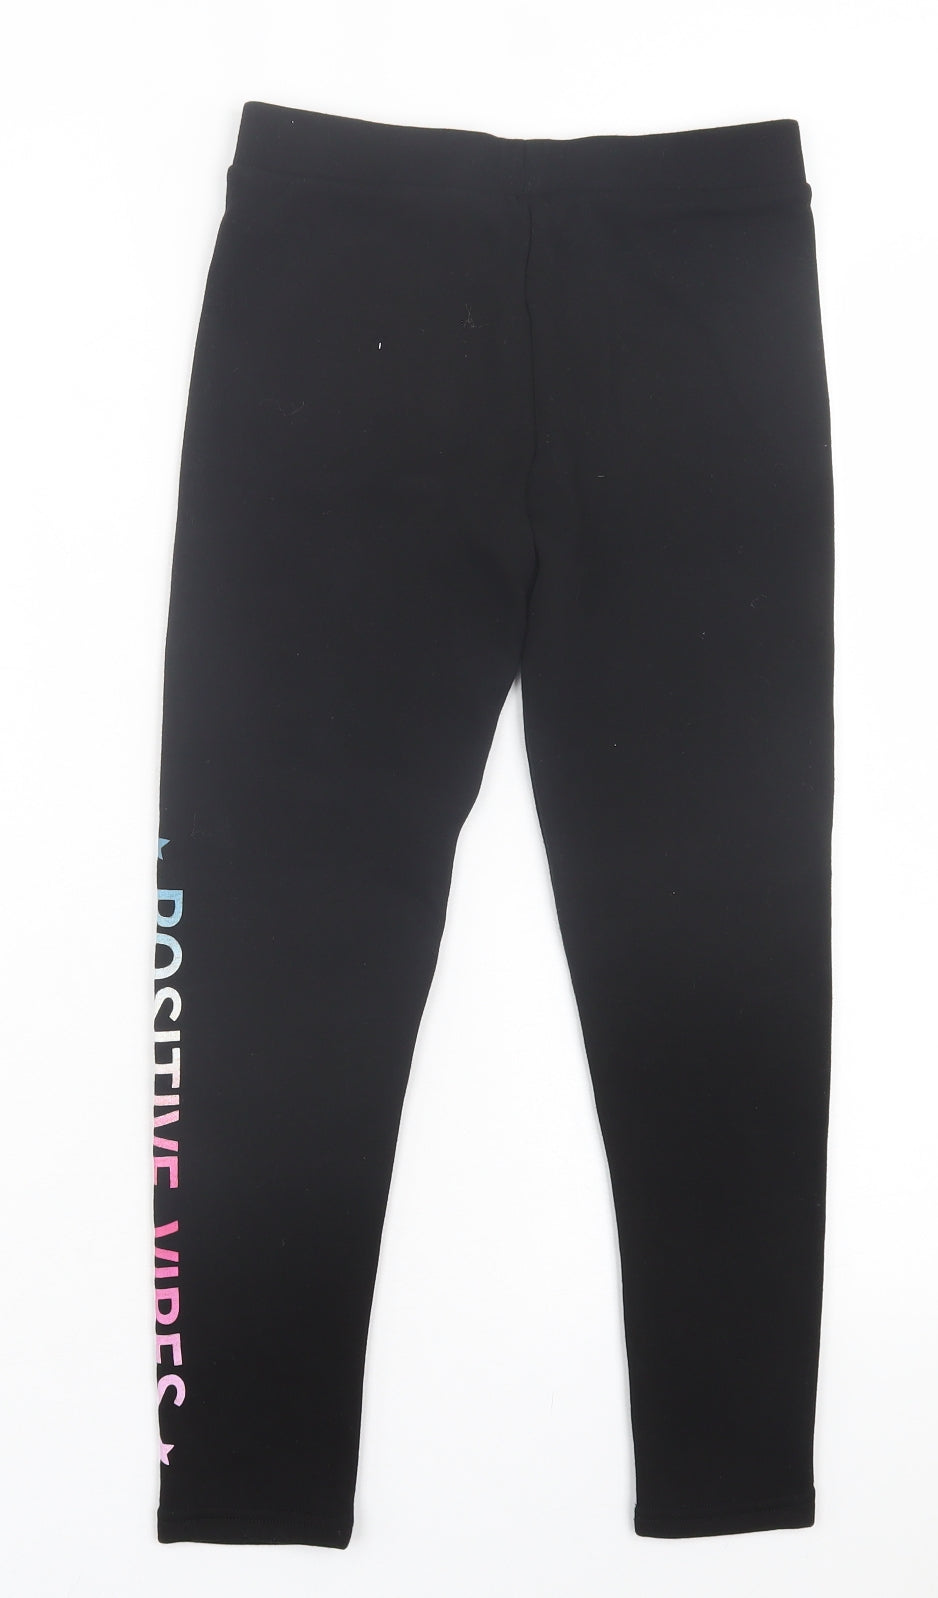 Primark Girls Black Polyester Capri Trousers Size 9-10 Years Regular Pullover - Fleece Lined Leggings. Positive Vibes